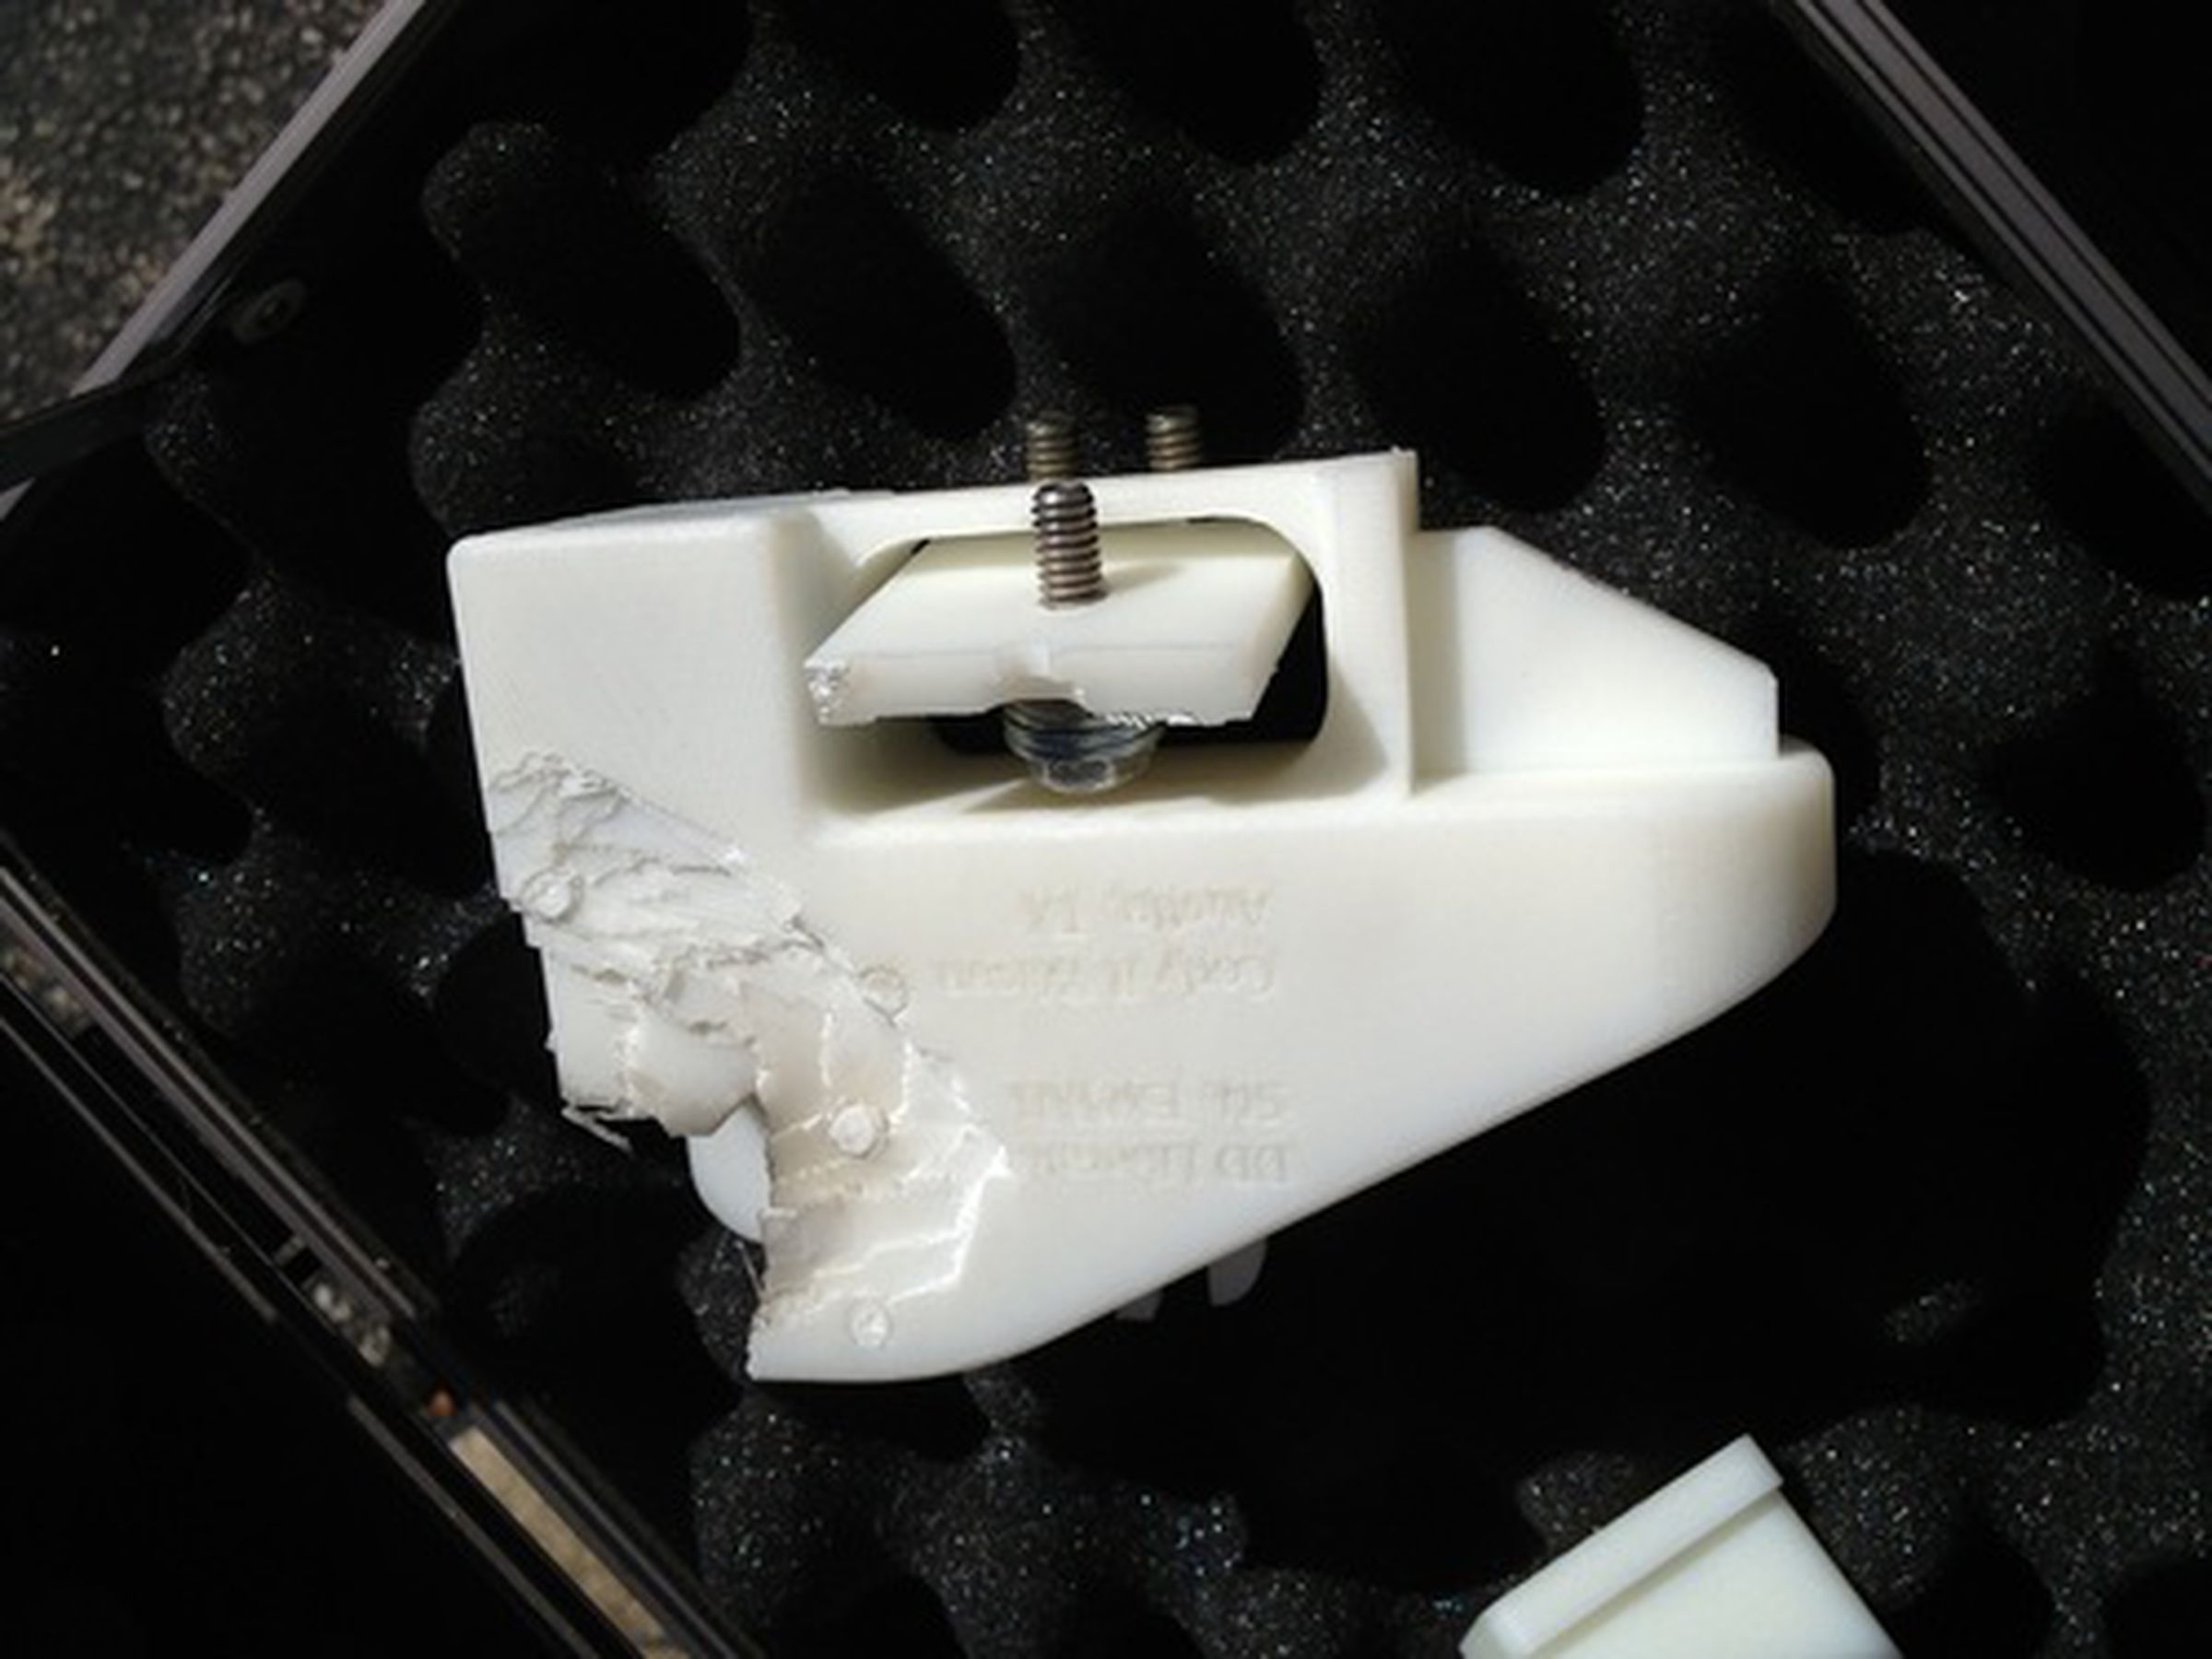 Defense Distributed 3D-printed gun